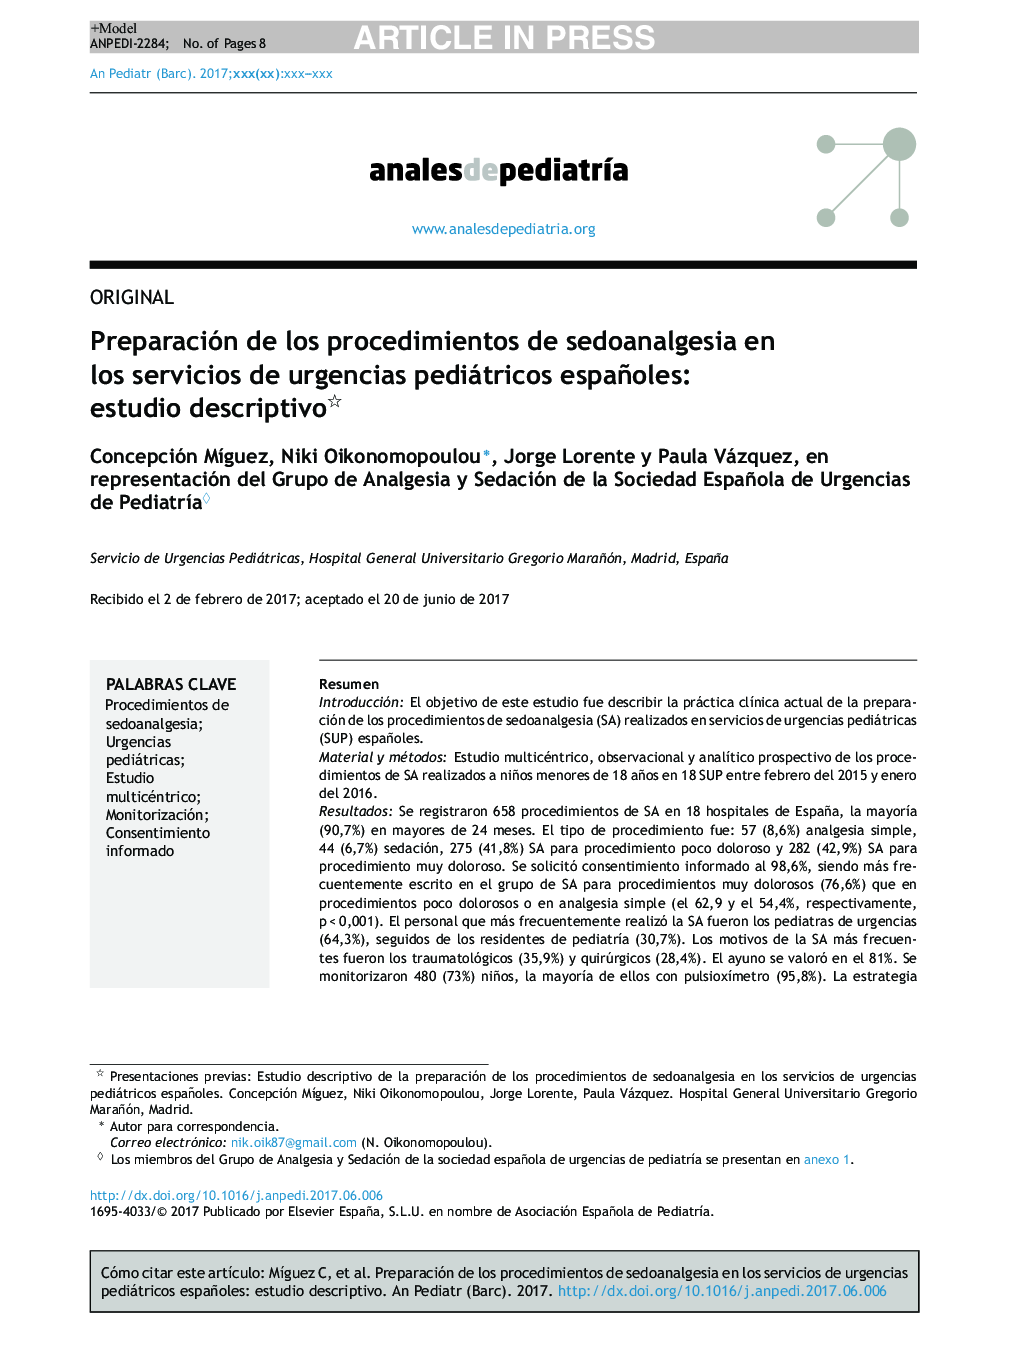 Preparación de los procedimientos de sedoanalgesia en los servicios de urgencias pediátricos españoles: estudio descriptivo